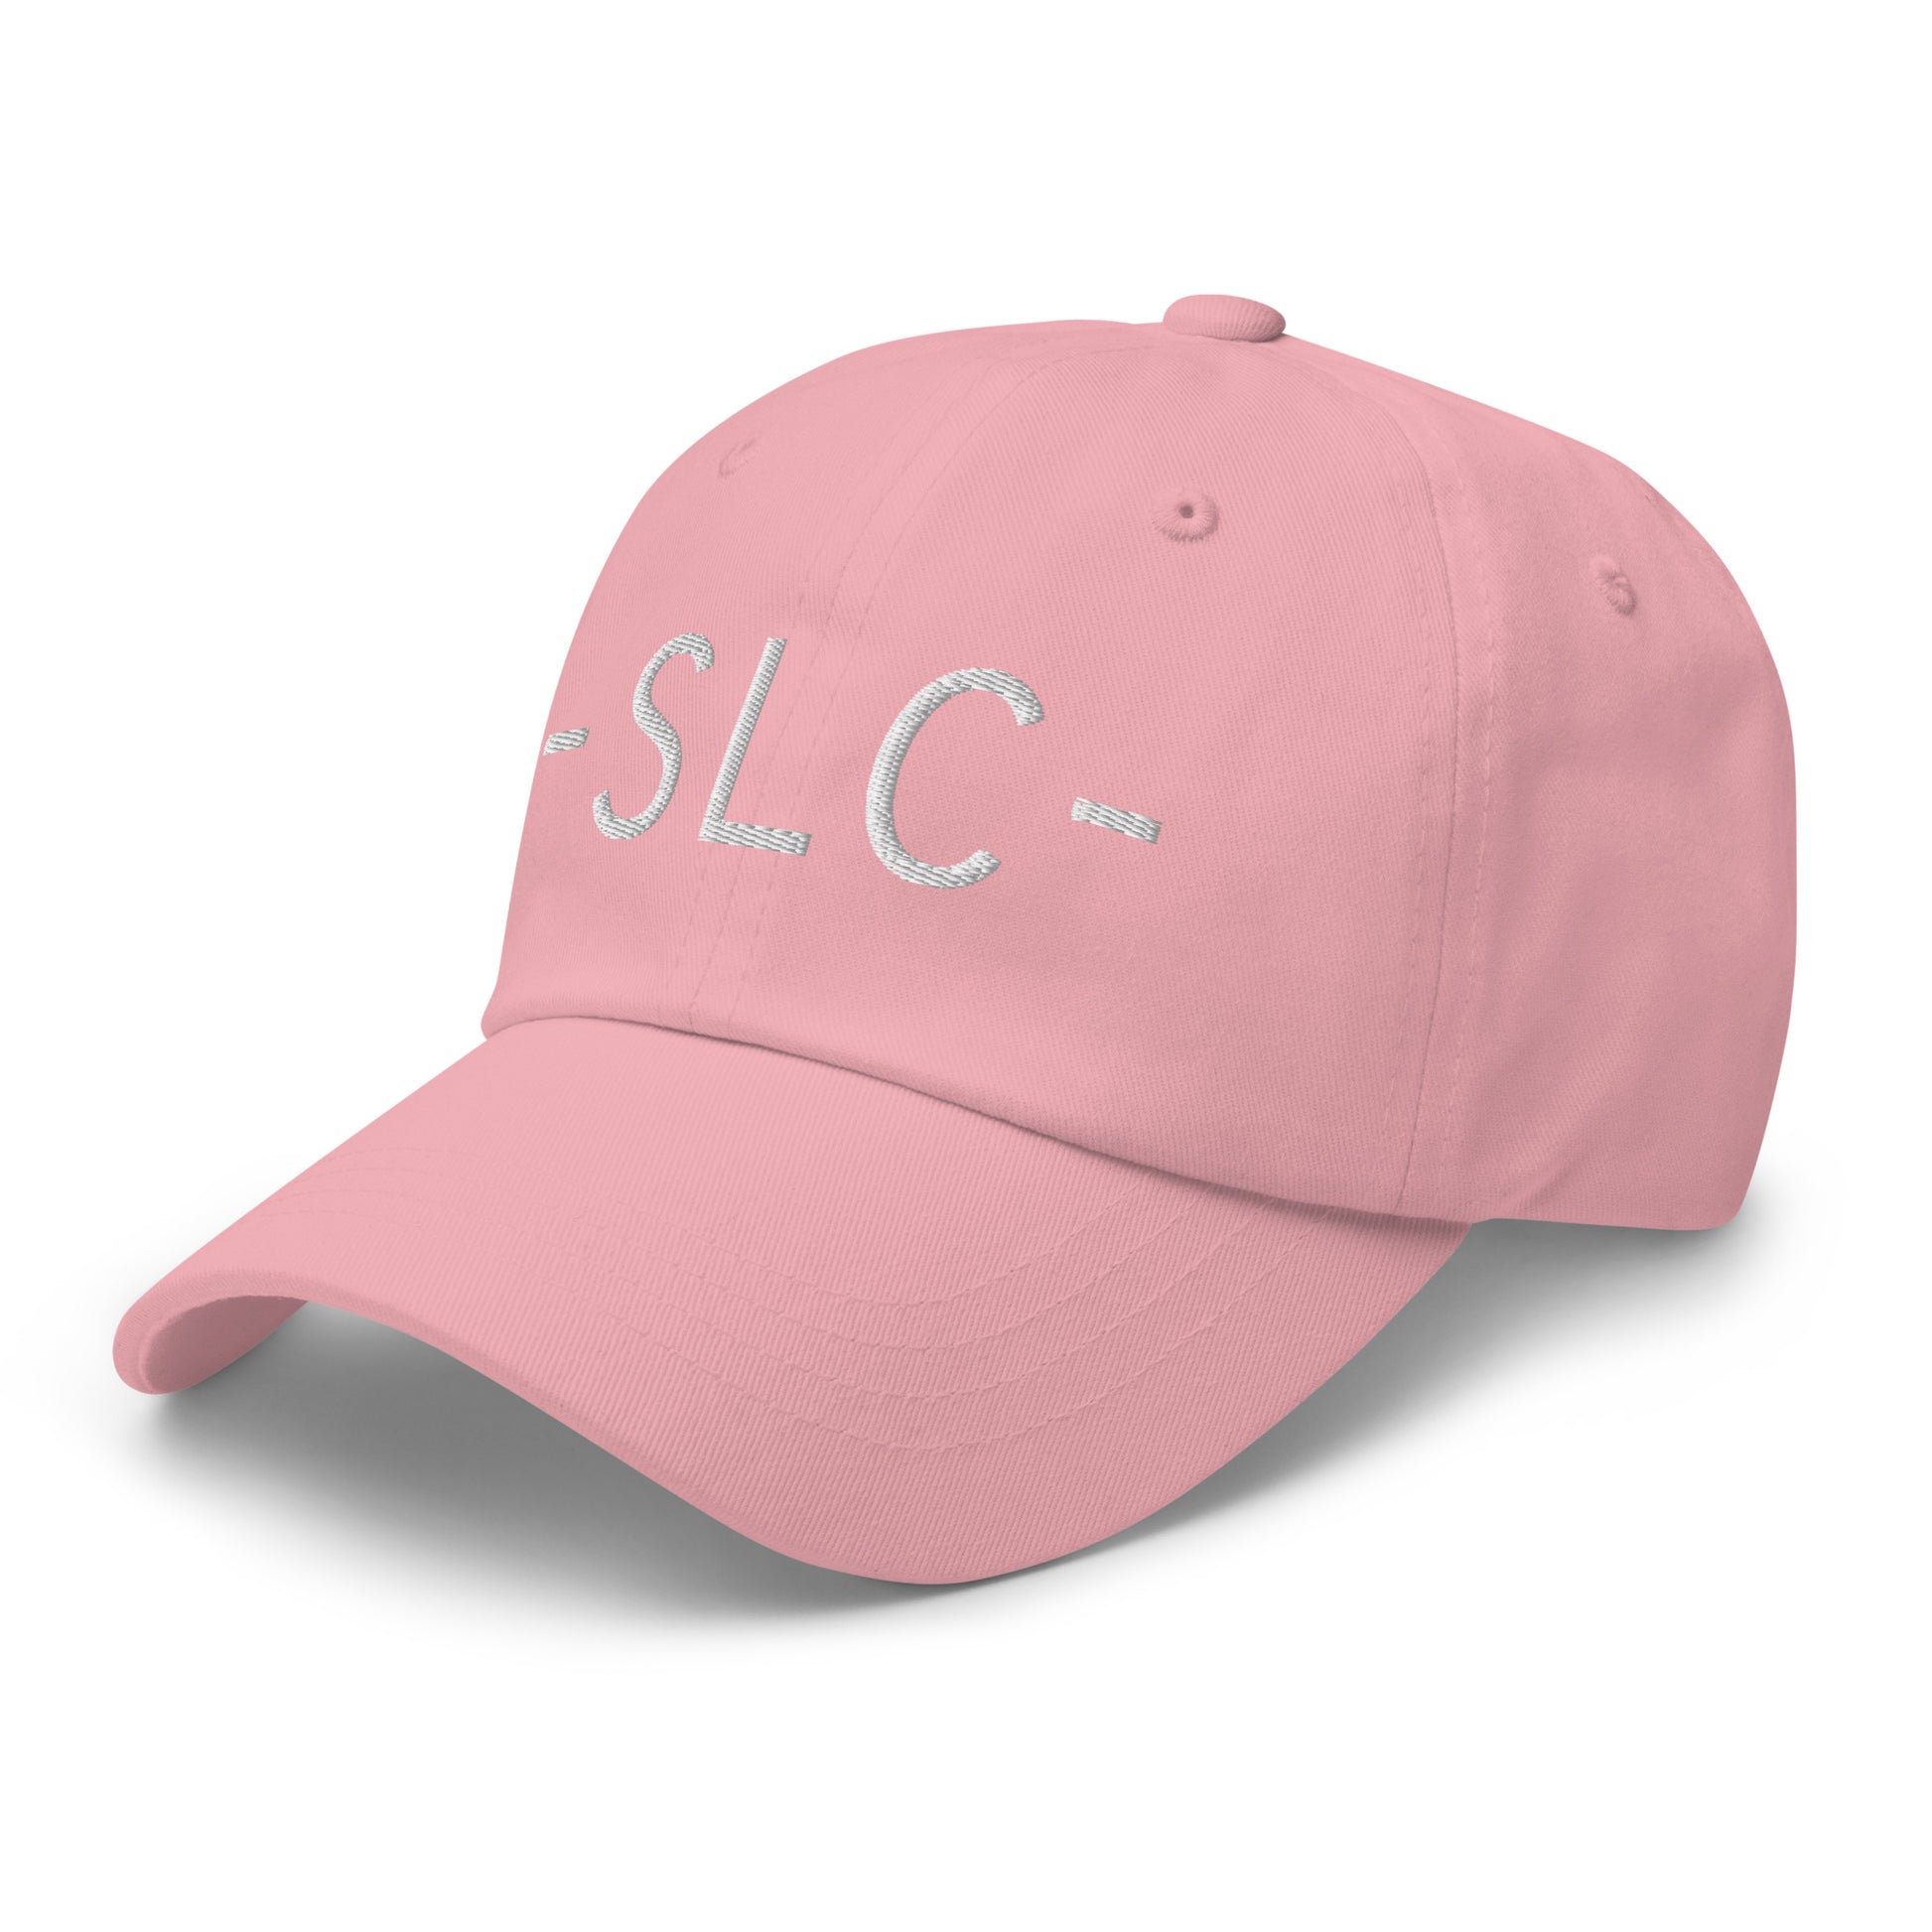 Souvenir Baseball Cap - White • SLC Salt Lake City • YHM Designs - Image 26